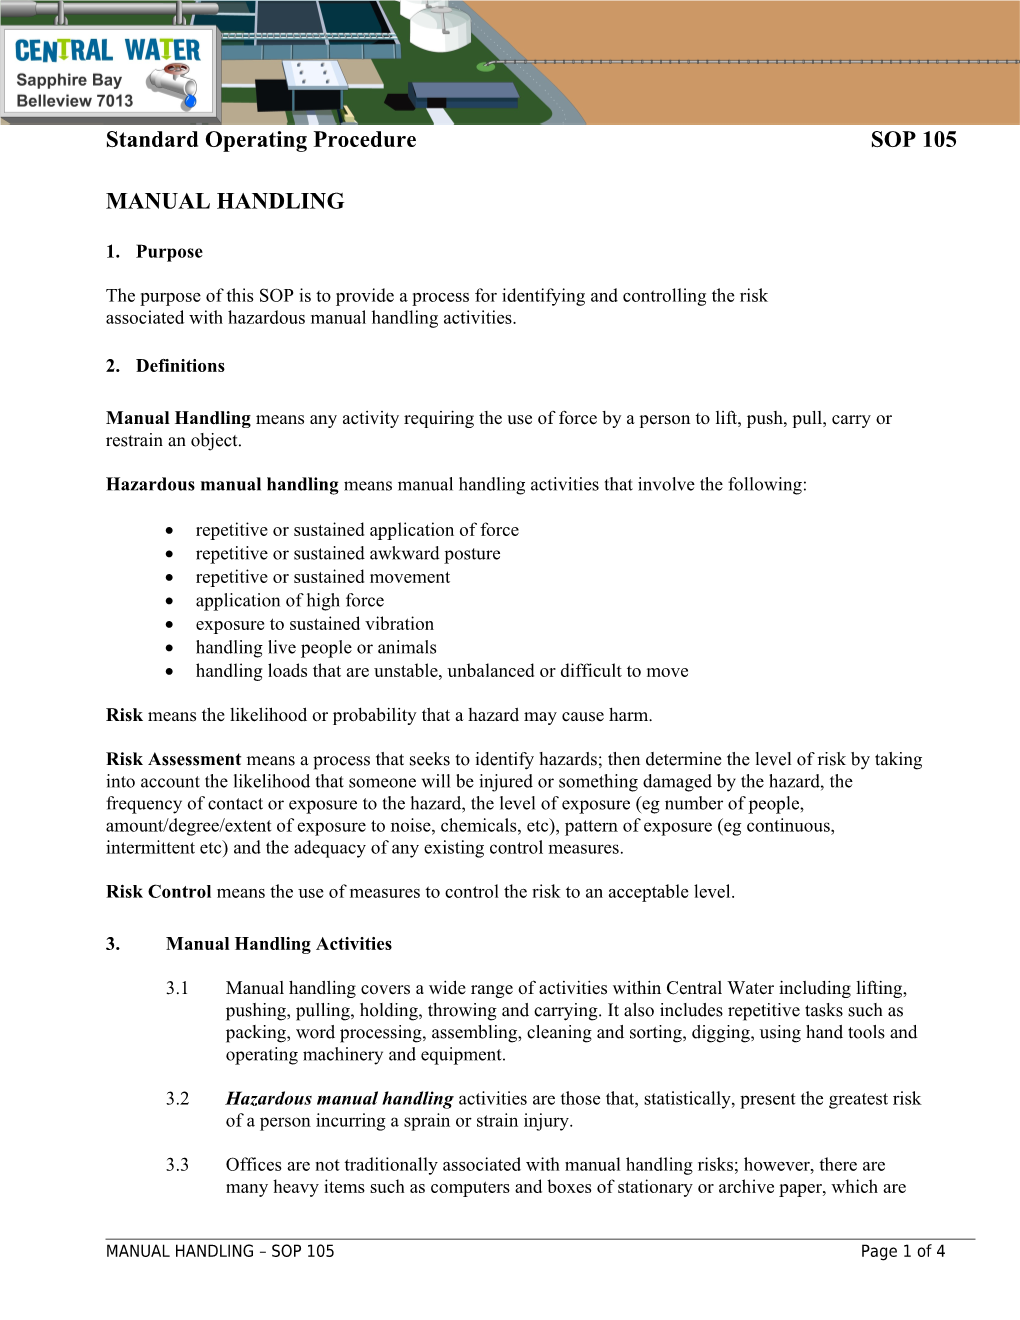 Associated with Hazardous Manual Handling Activities